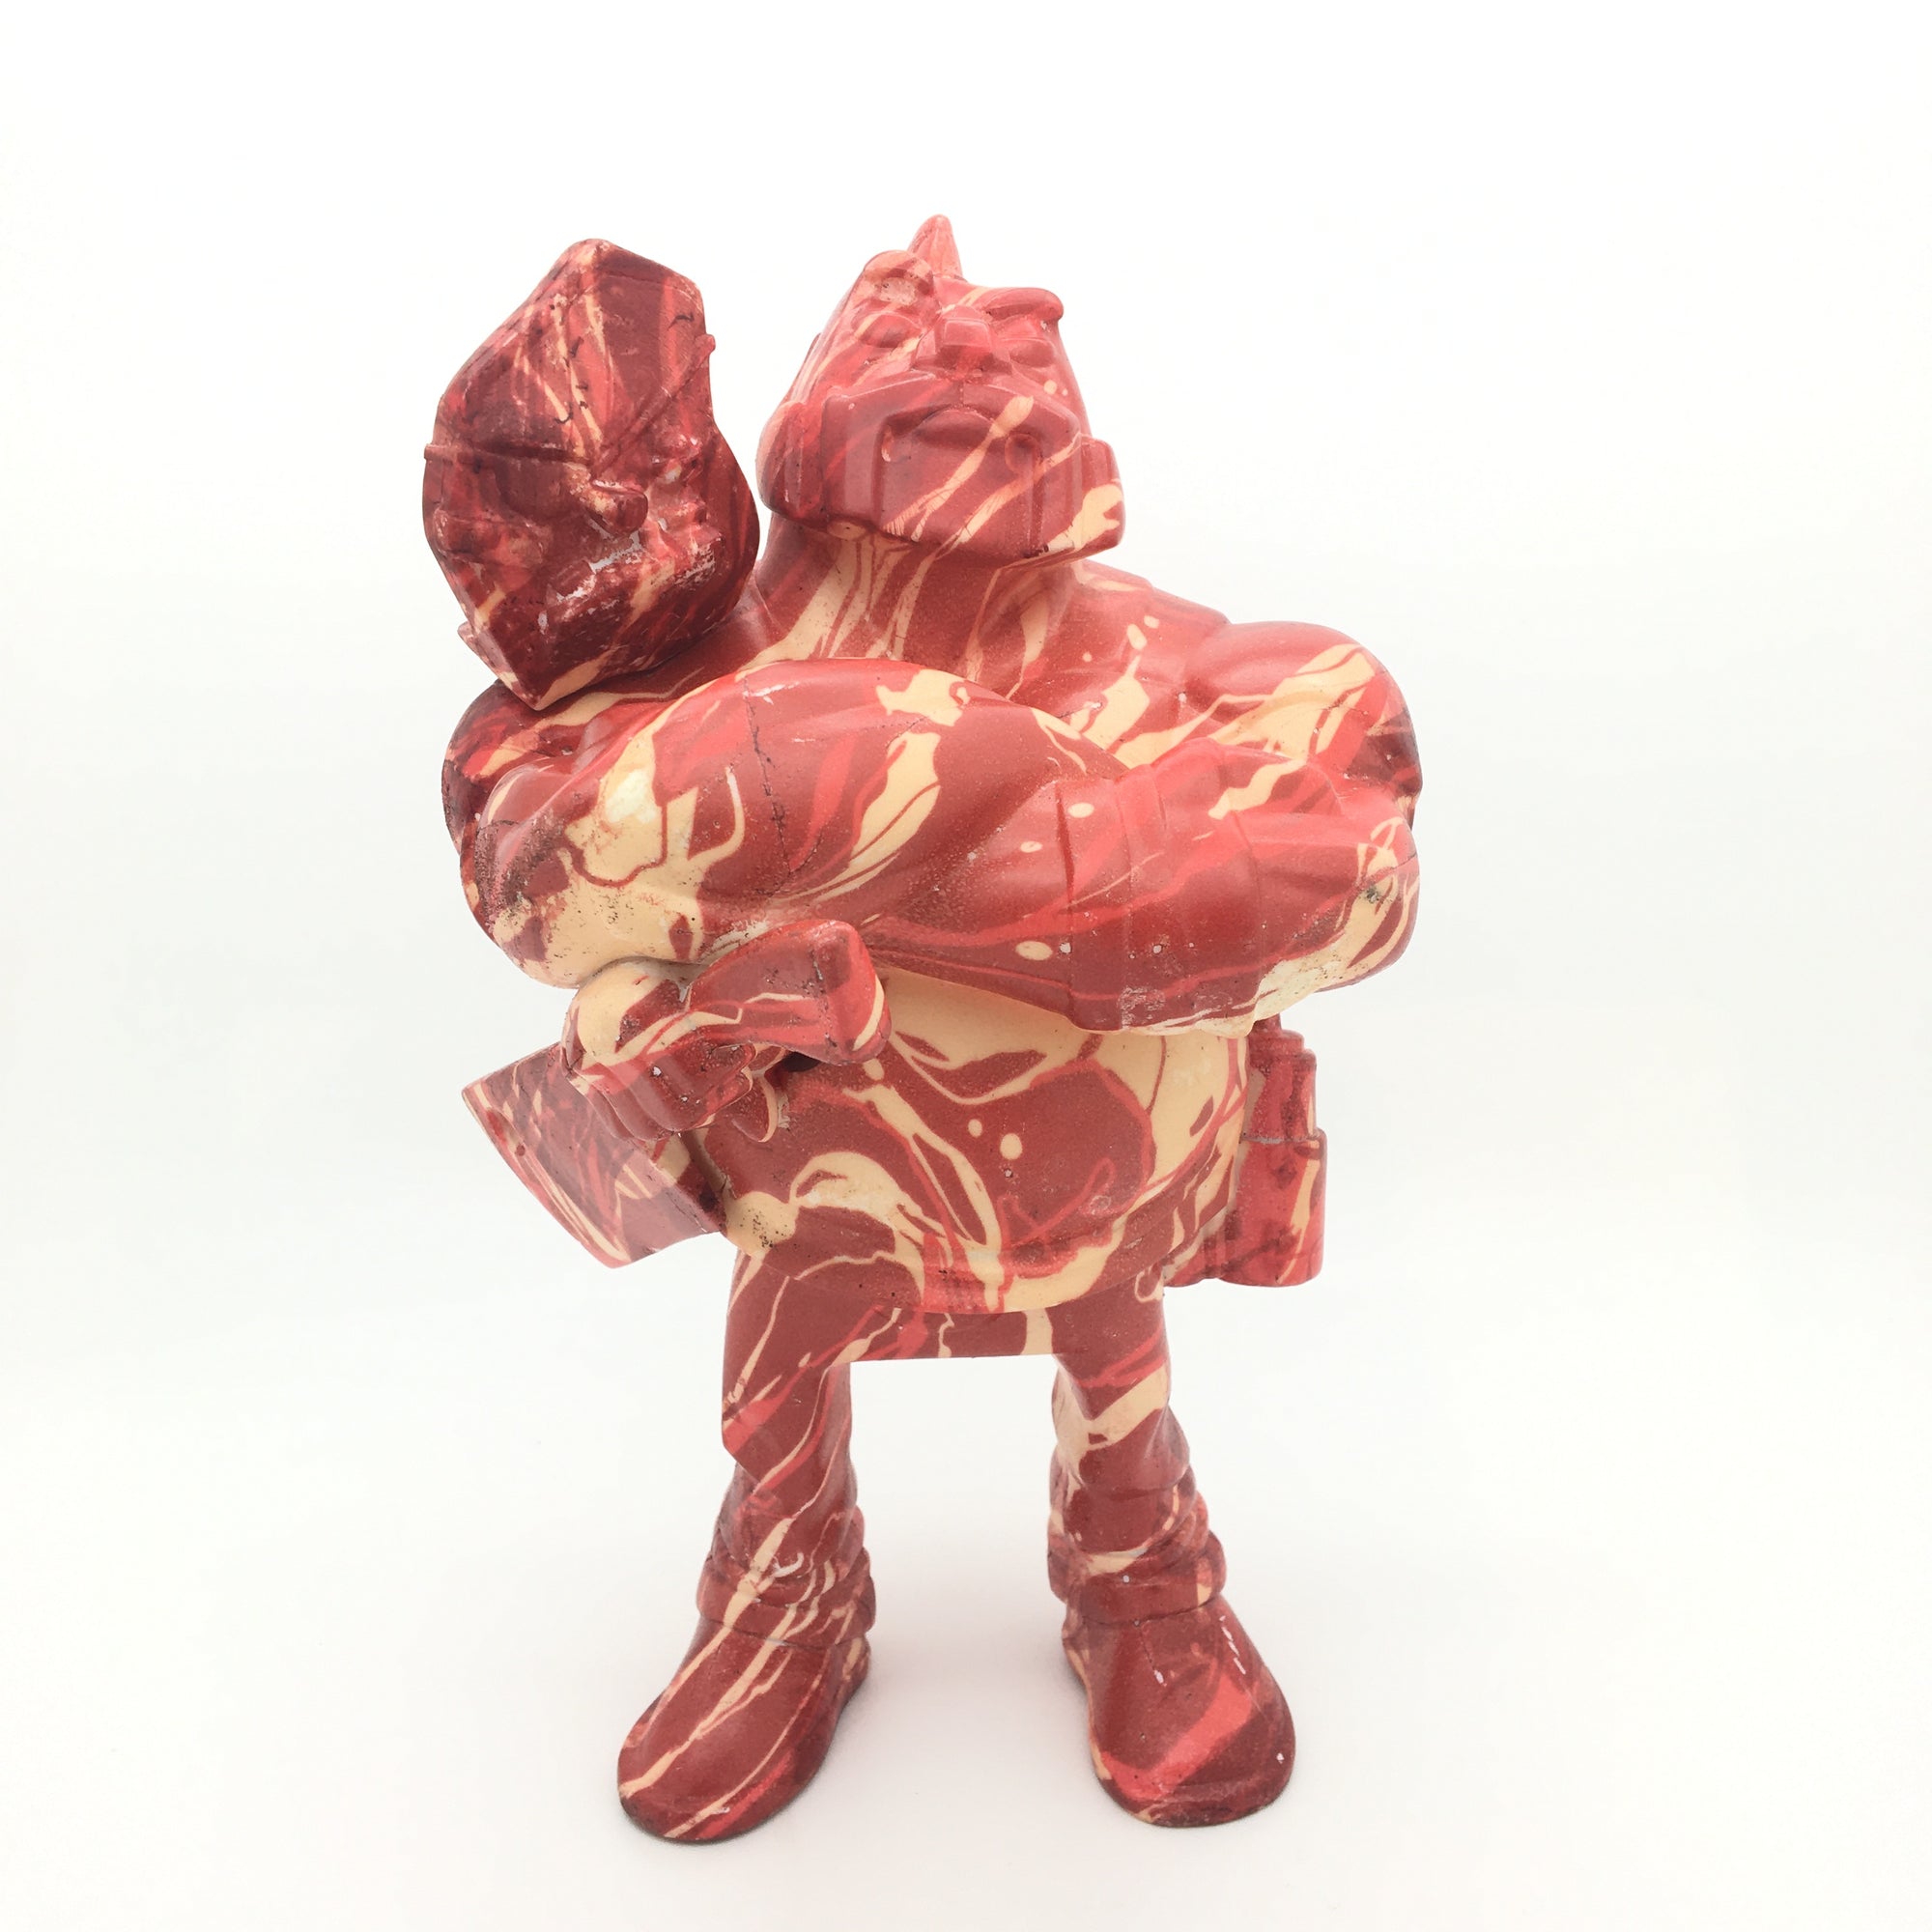 Lethal Taco Premium Cut Meat Edition by Oscar Mar x David Dick